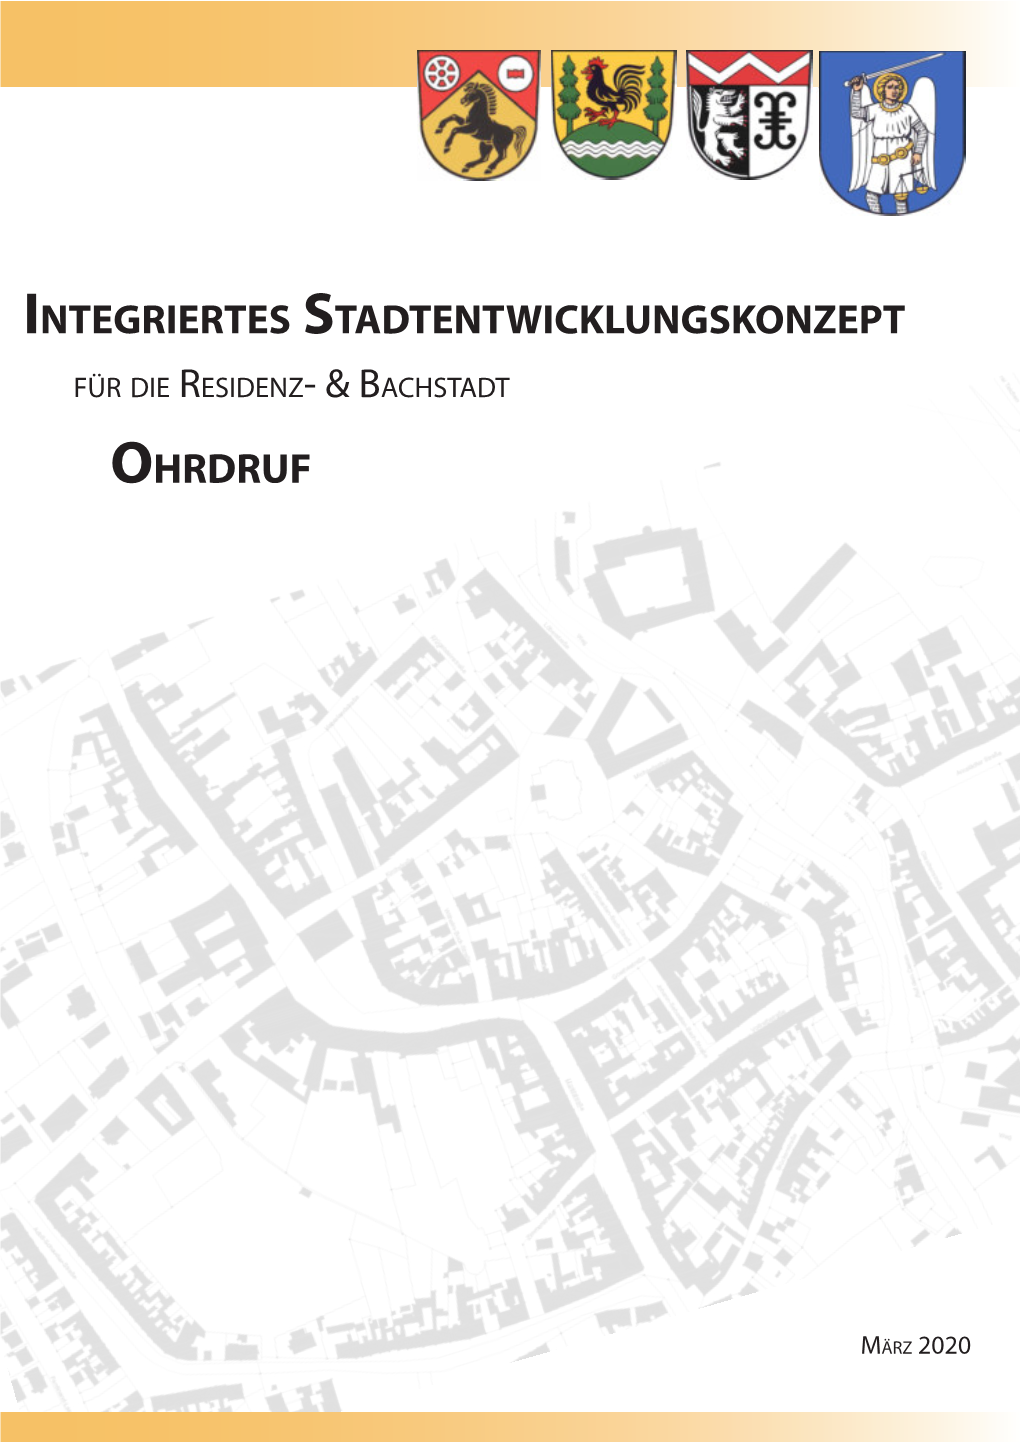 Integriertes Stadtentwicklungskonzept Ohrdruf 2020